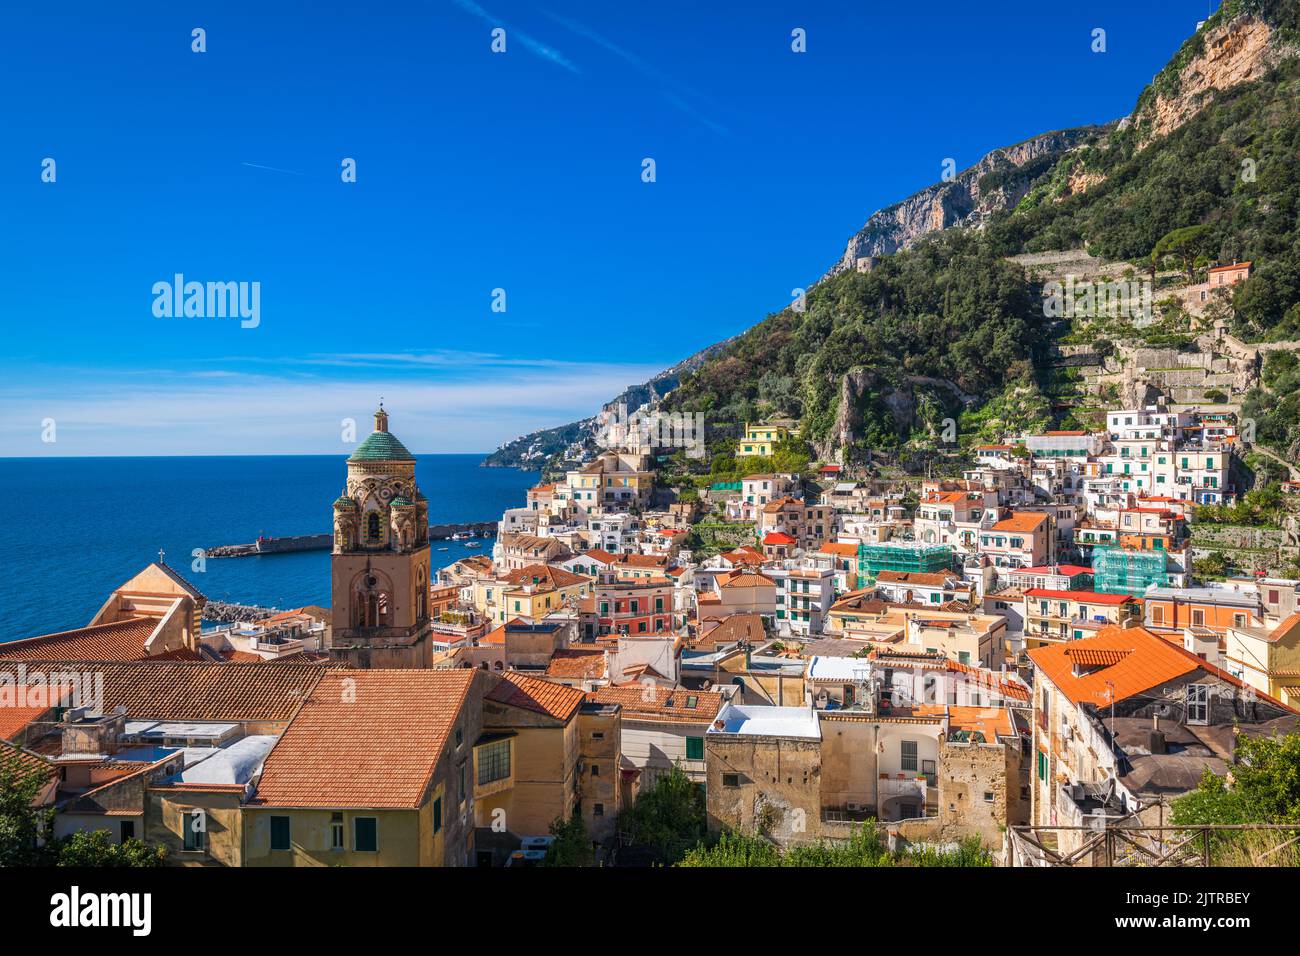 Amalfi, ville italienne, paysage urbain sur la côte amalfitaine. Banque D'Images